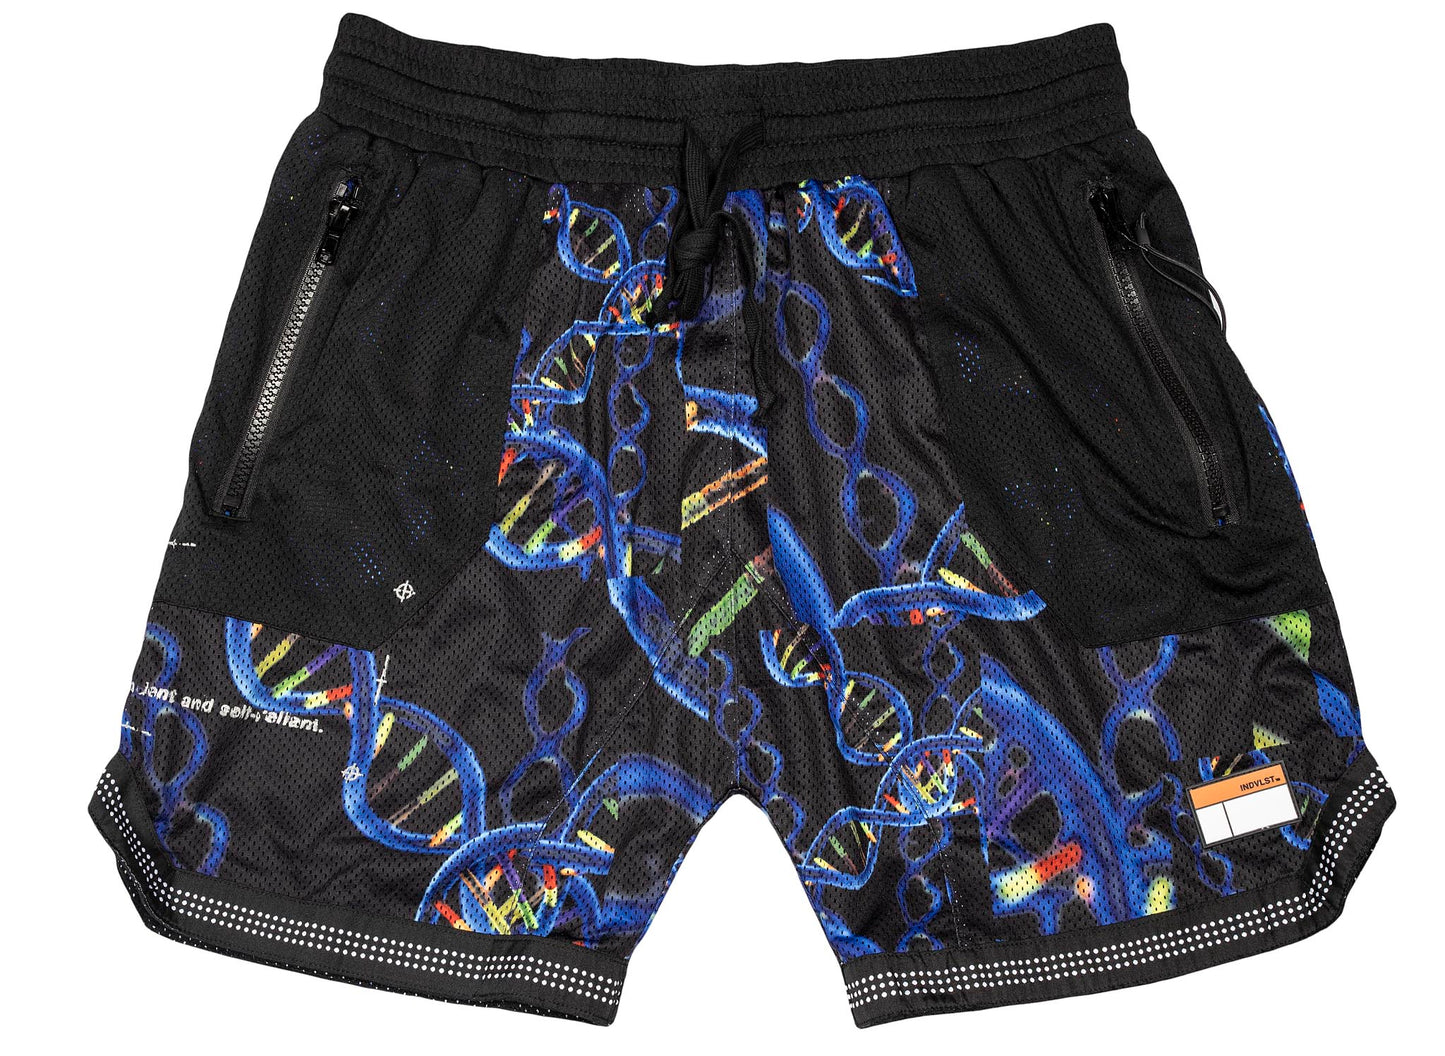 INDVLST DNA Men's Shorts 'Black'